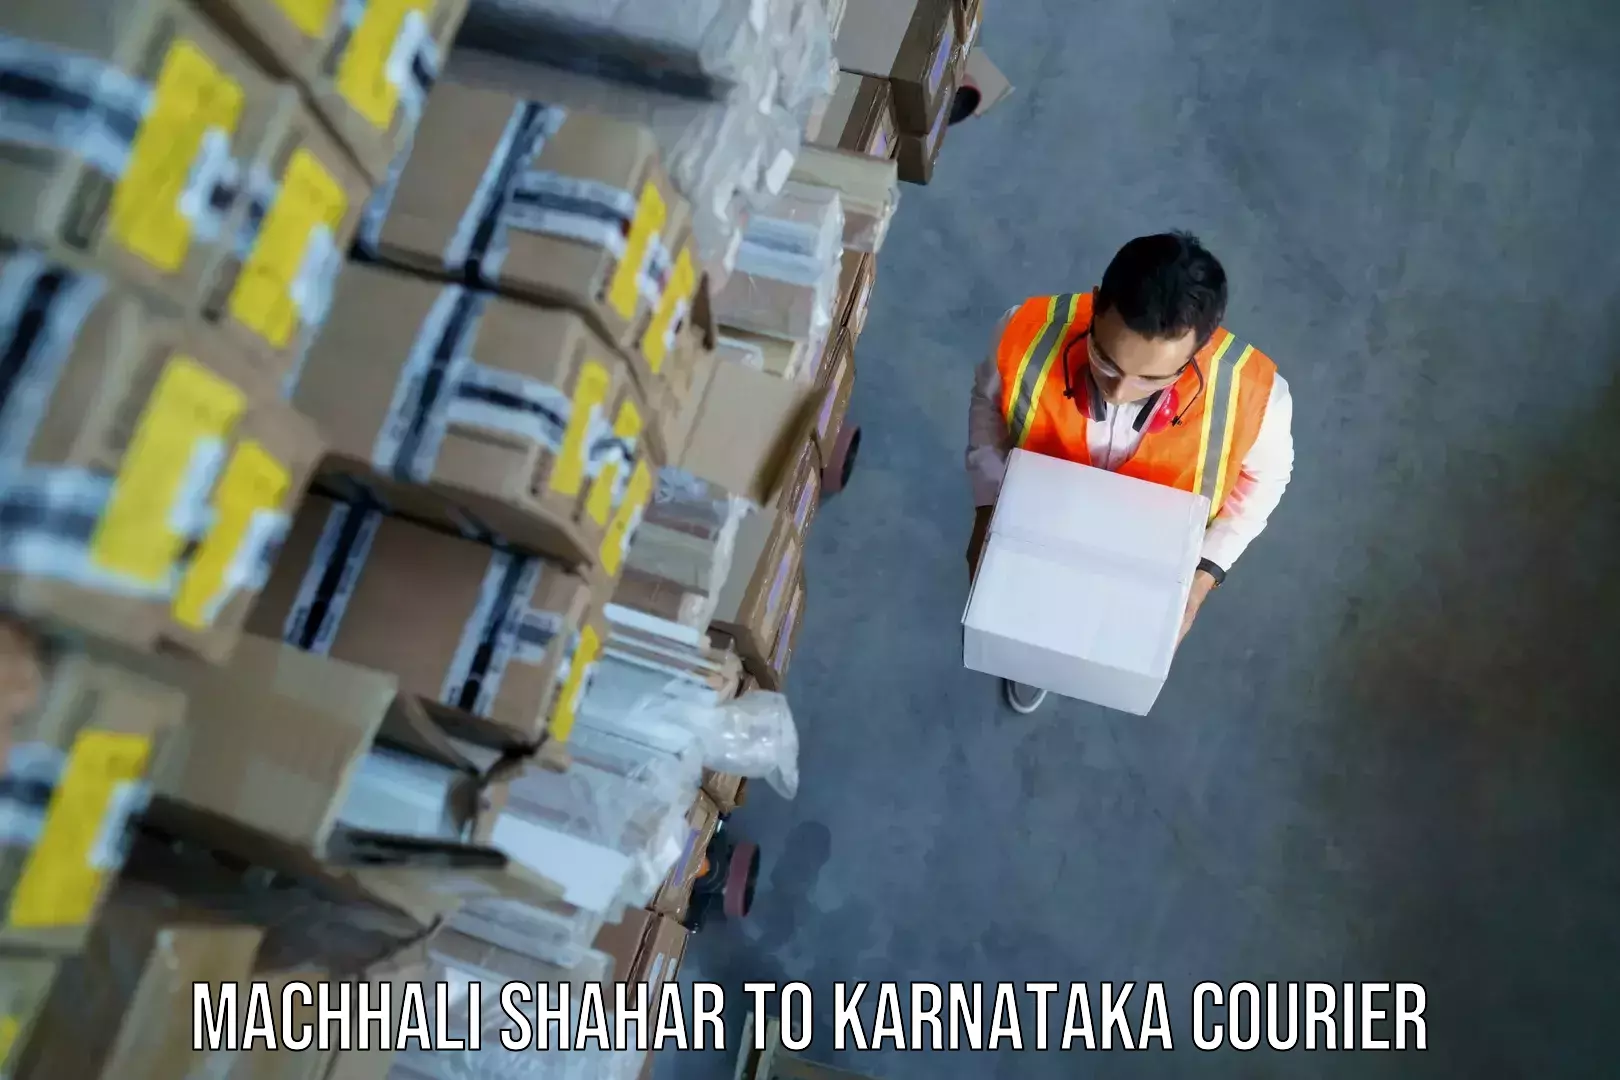 Baggage transport scheduler Machhali Shahar to Karnataka